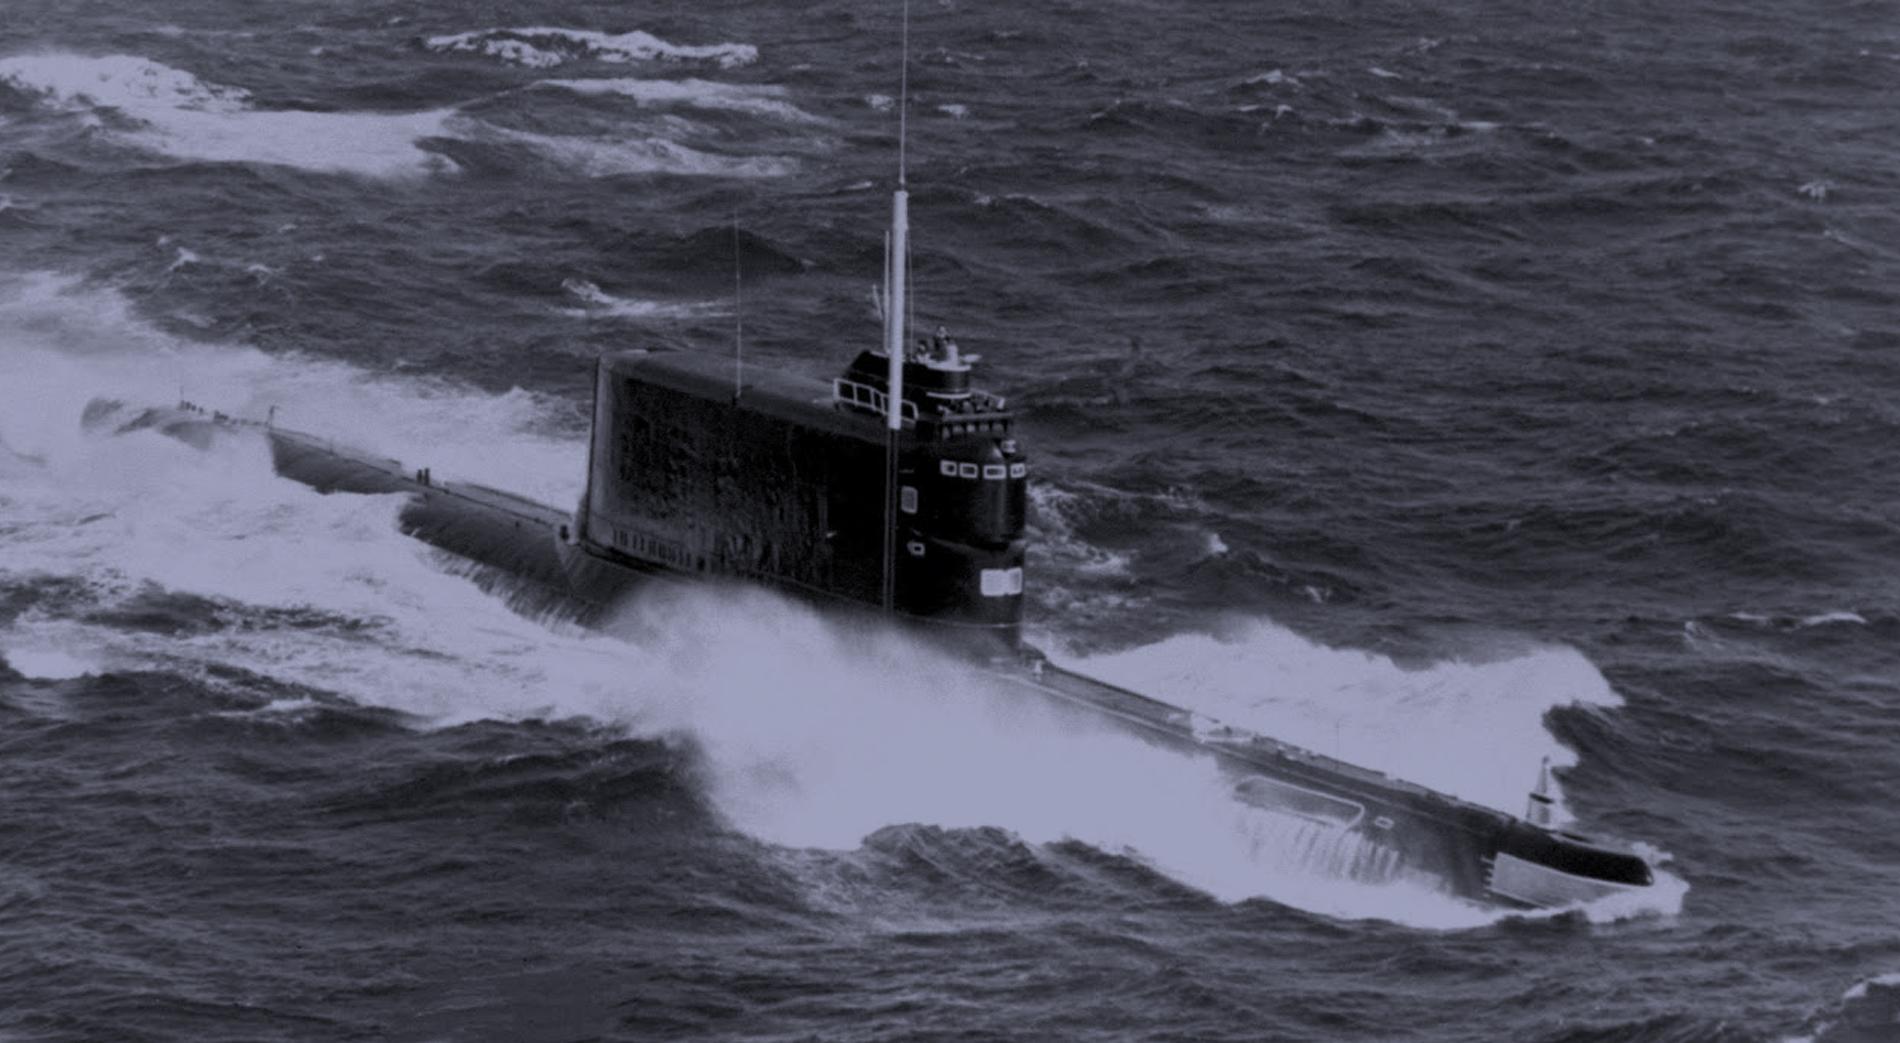 Пл ка. К-129 подводная лодка. Подводная лодка СССР К-129. К-129 комсомолец. Гибель АПЛ К-129.